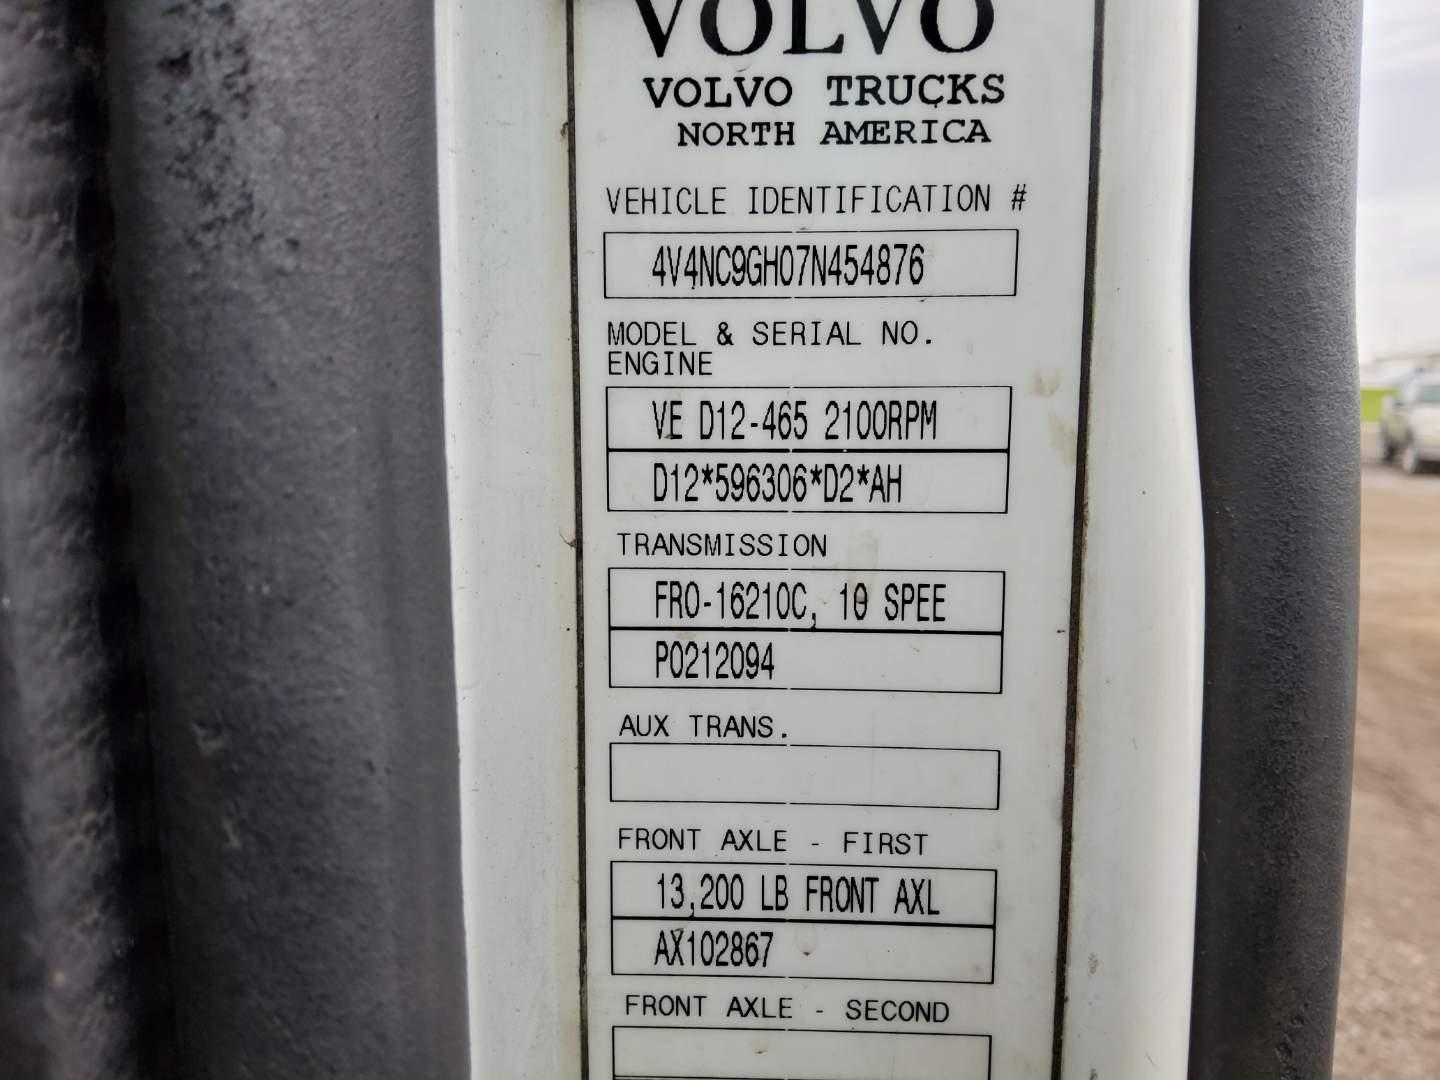 2007 VOLVO VNL64T670 Serial Number: 4V4NC9GH07N454876